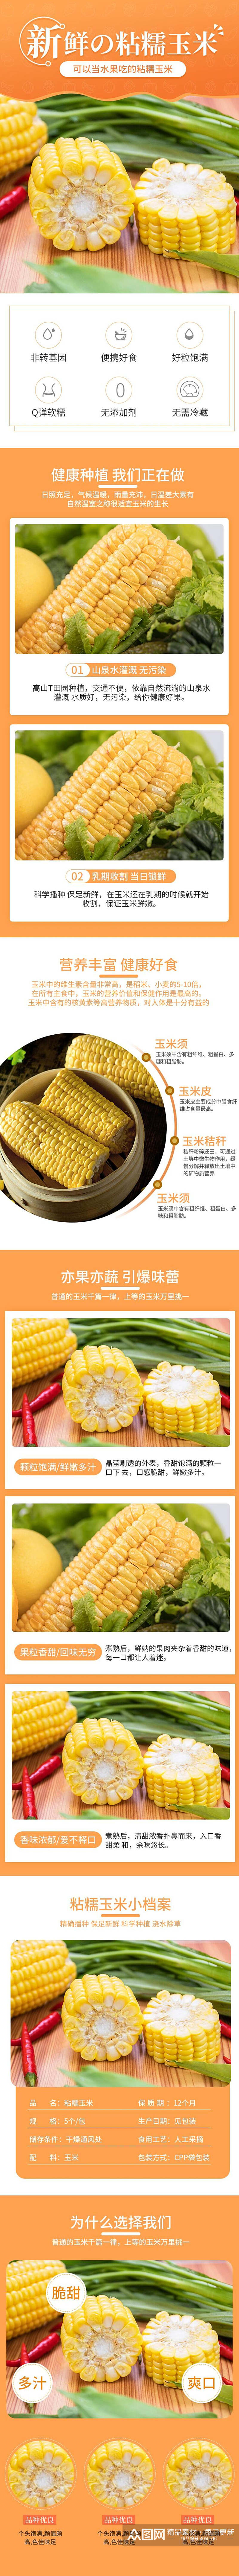 玉米蔬菜手机版详情页素材